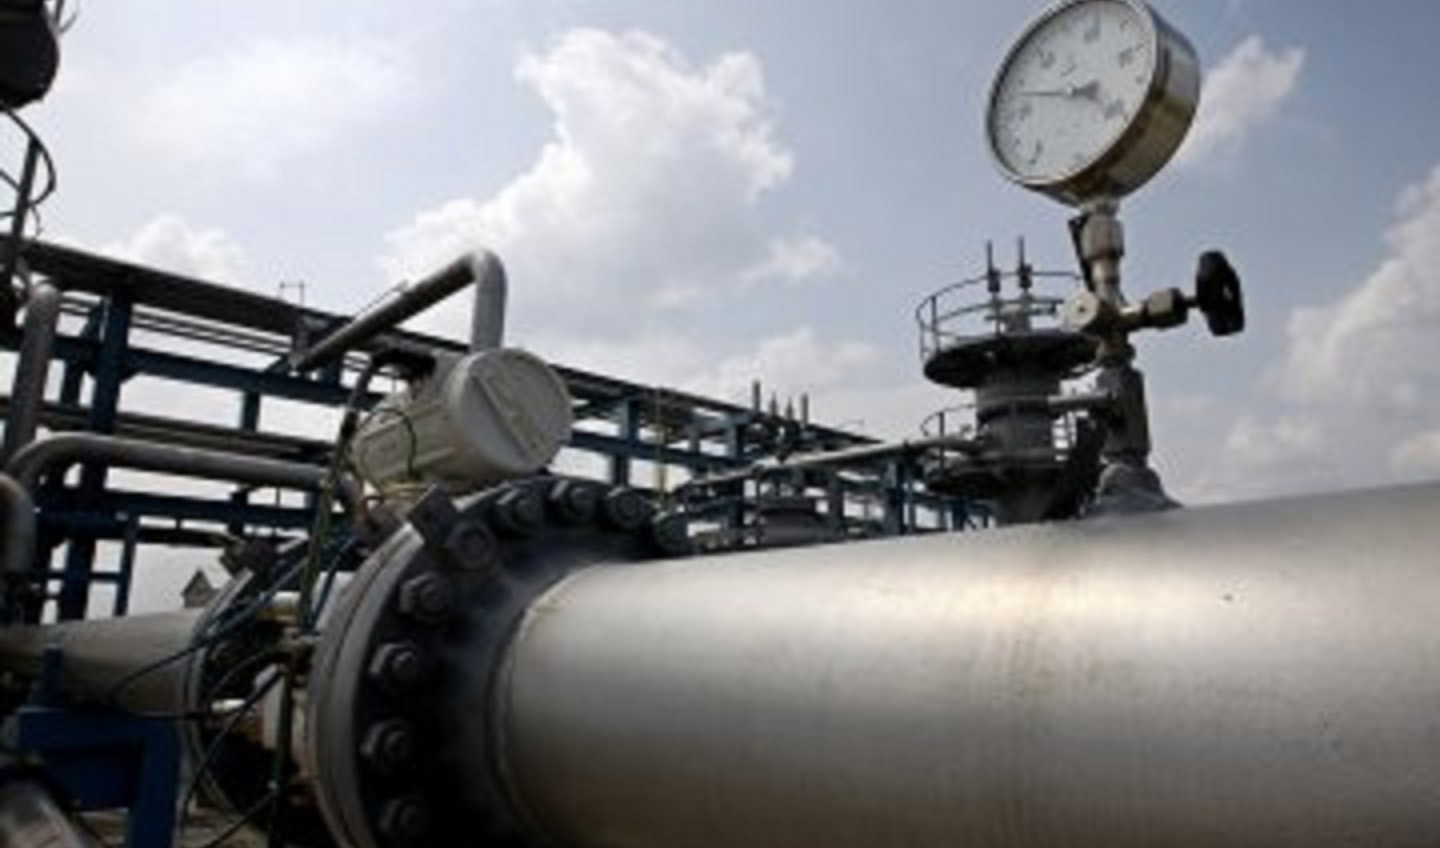 اقدام عجولانه امریکا برای فشار بیشتر بر ایران/ آیا گاز به مسیر سقوط قیمت هدایت شده است؟